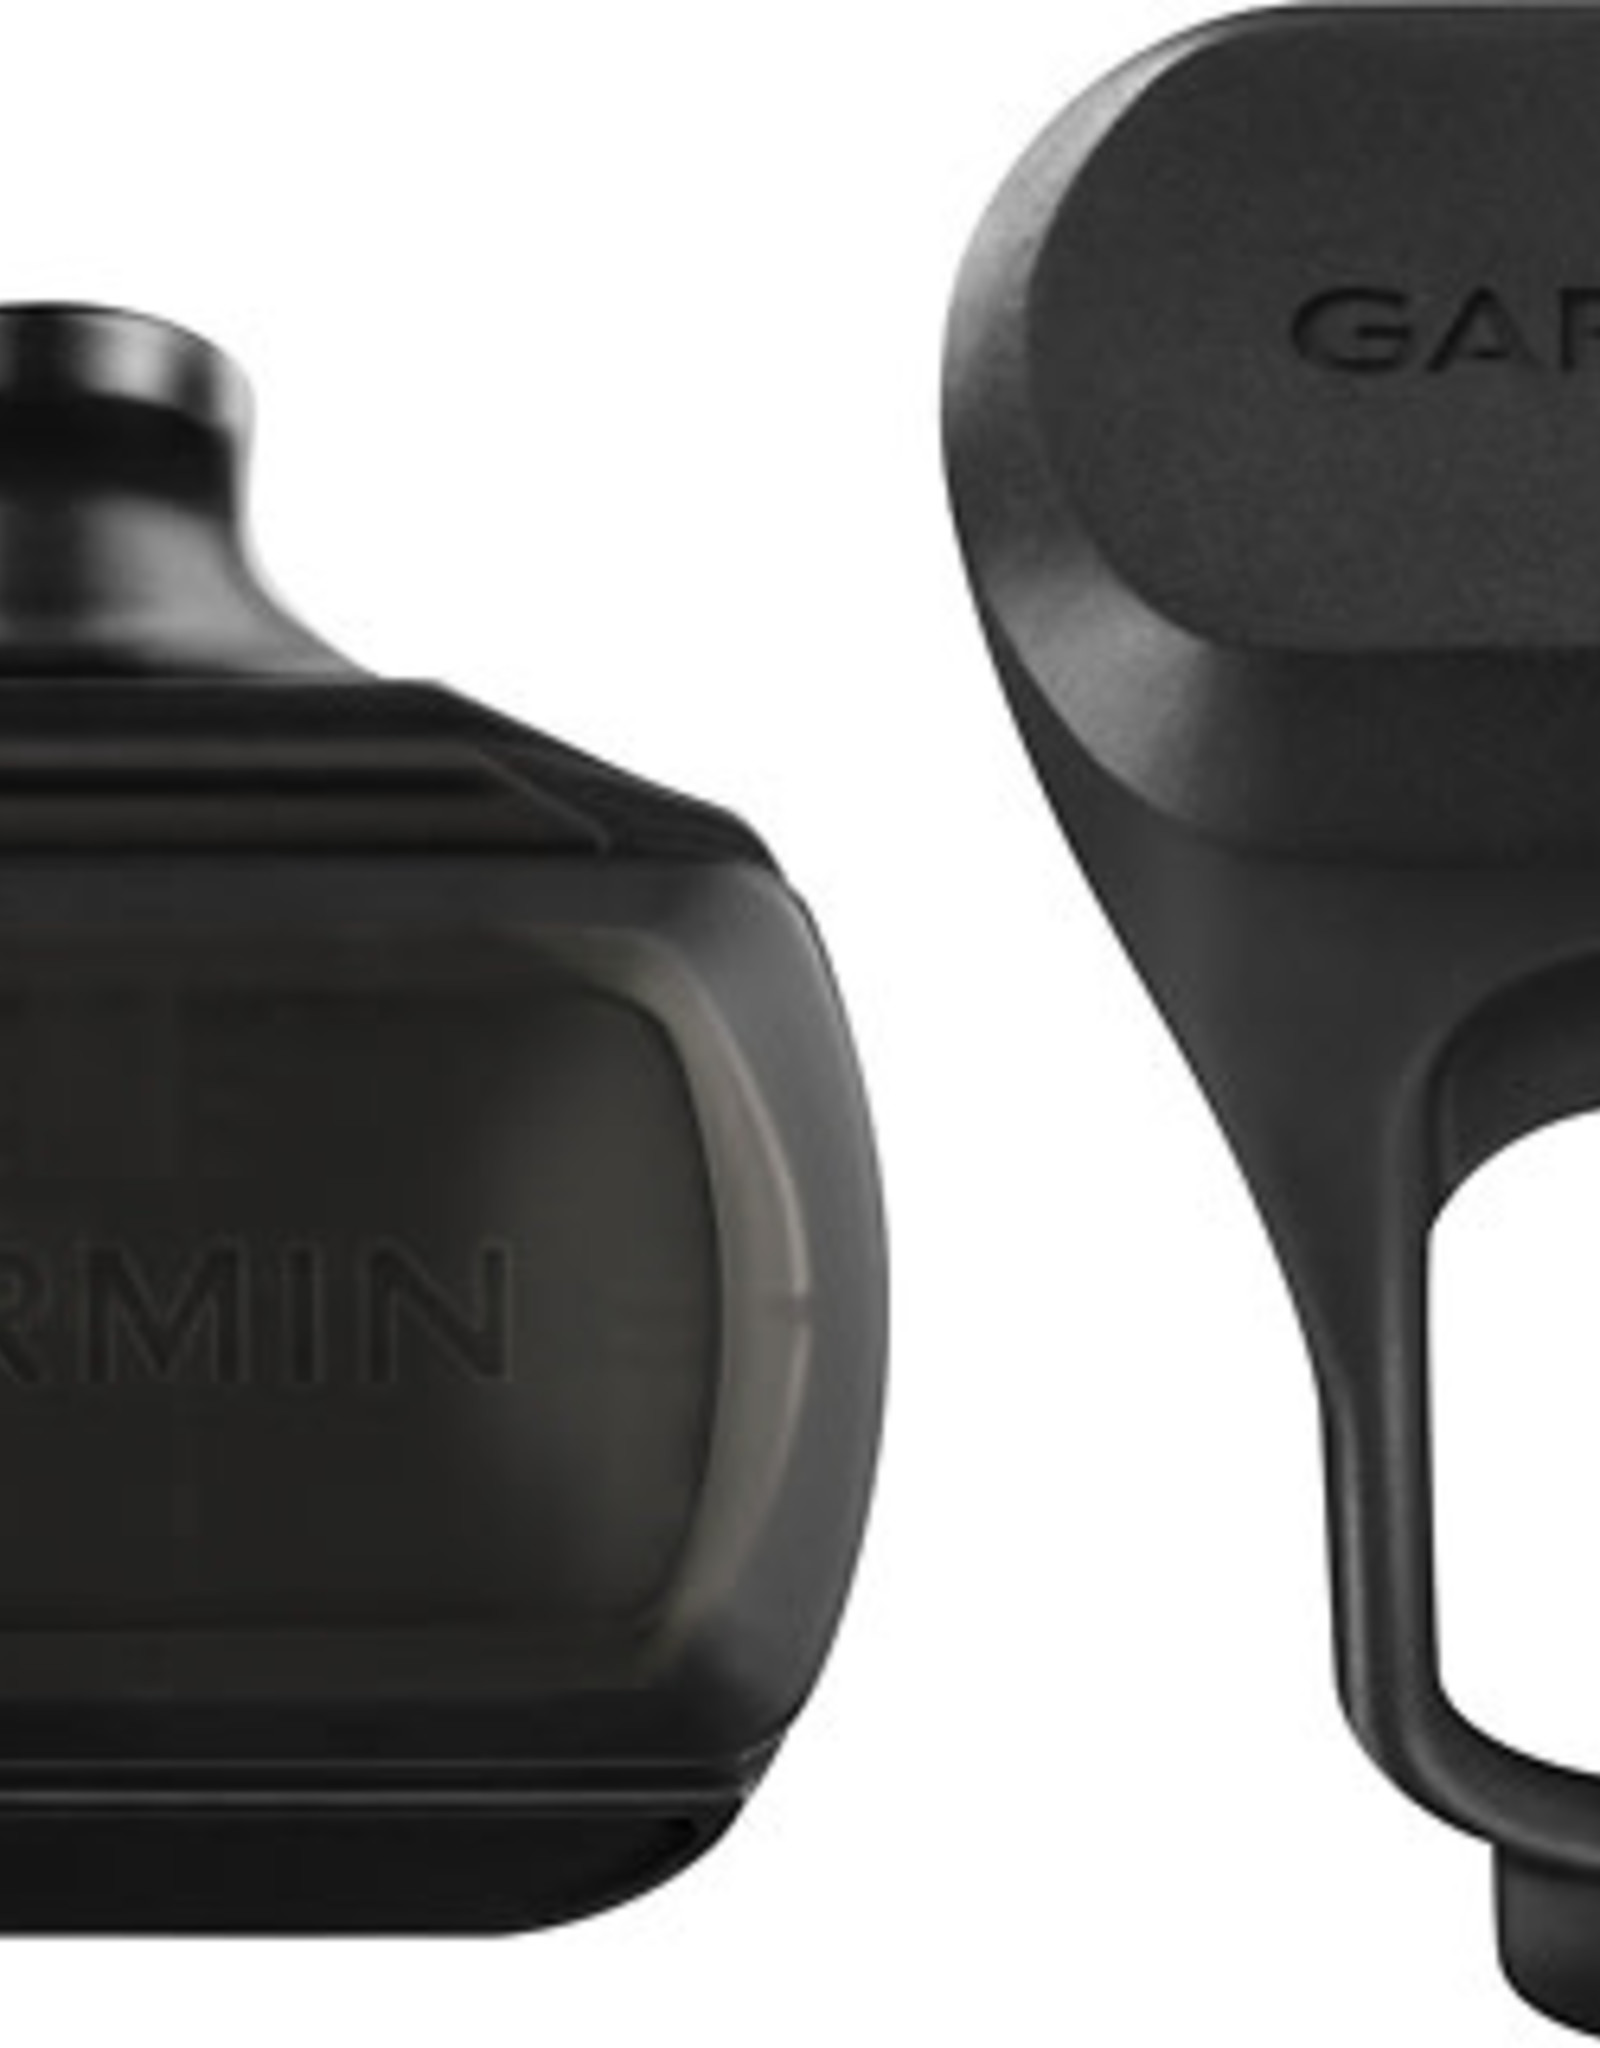 Garmin Garmin Bike Speed Sensor, Black